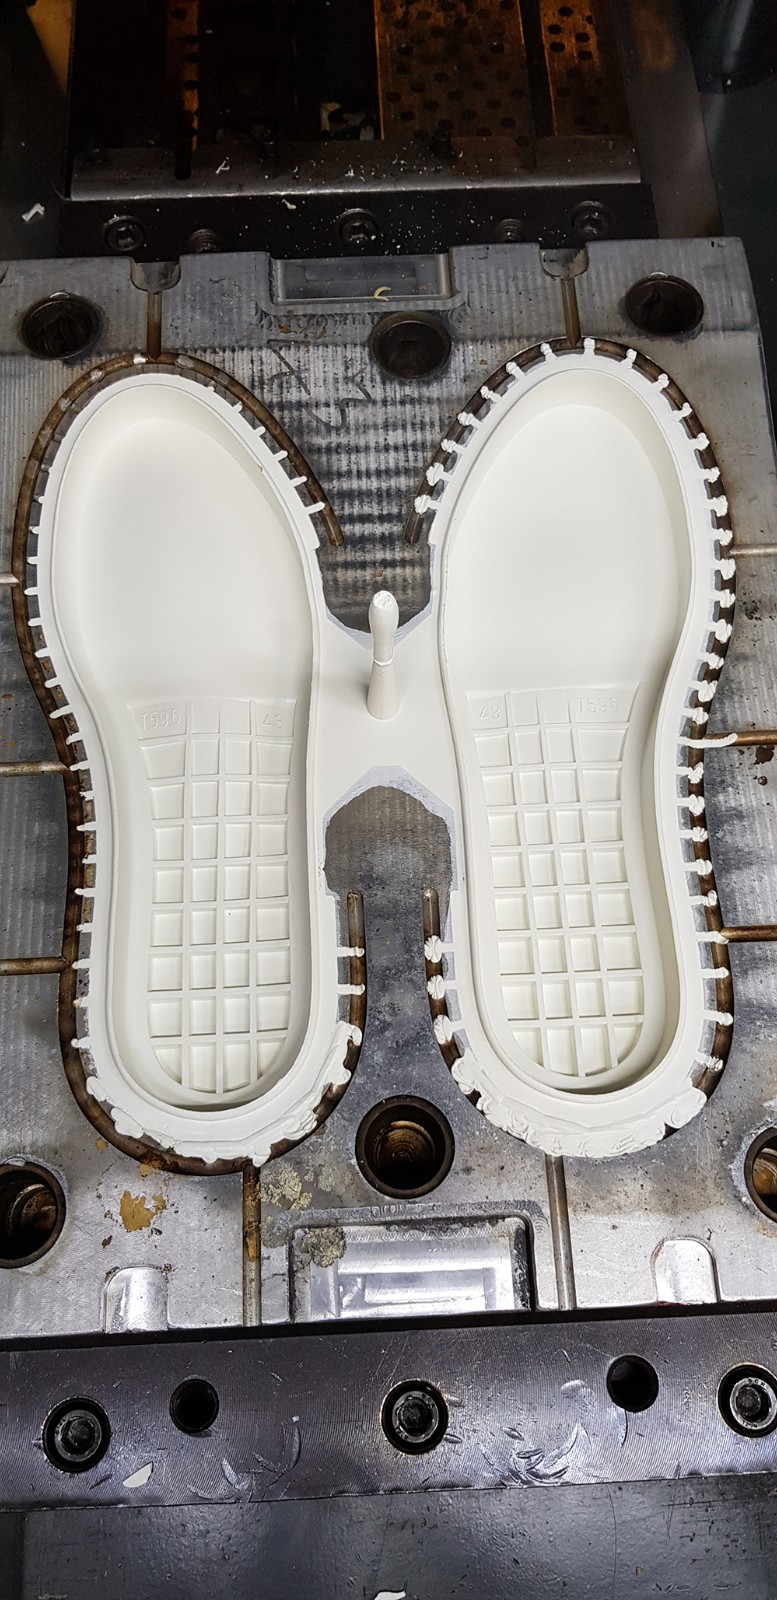 橡胶鞋底机对于企业的发展有什么影响吗？